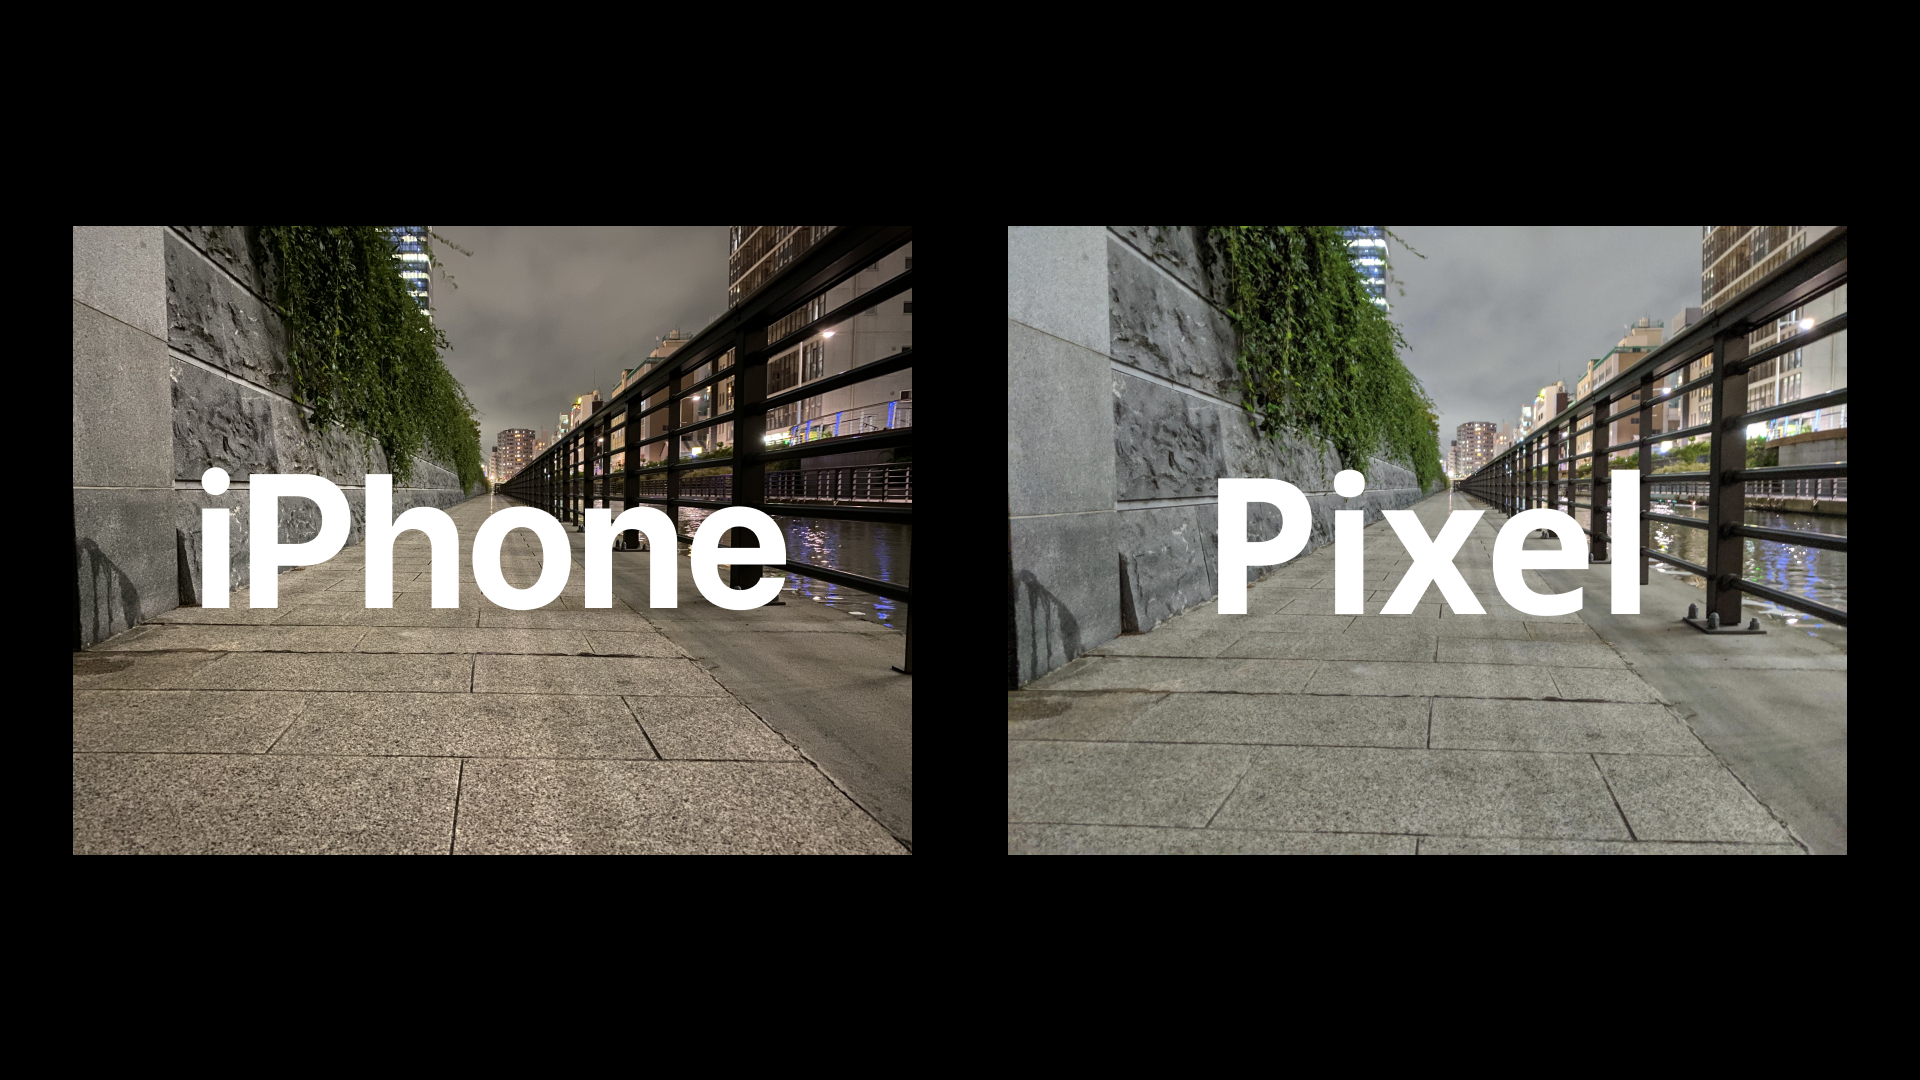 iPhone 11 ProとPixel、ナイトモードを比較してみると違いがわかりました